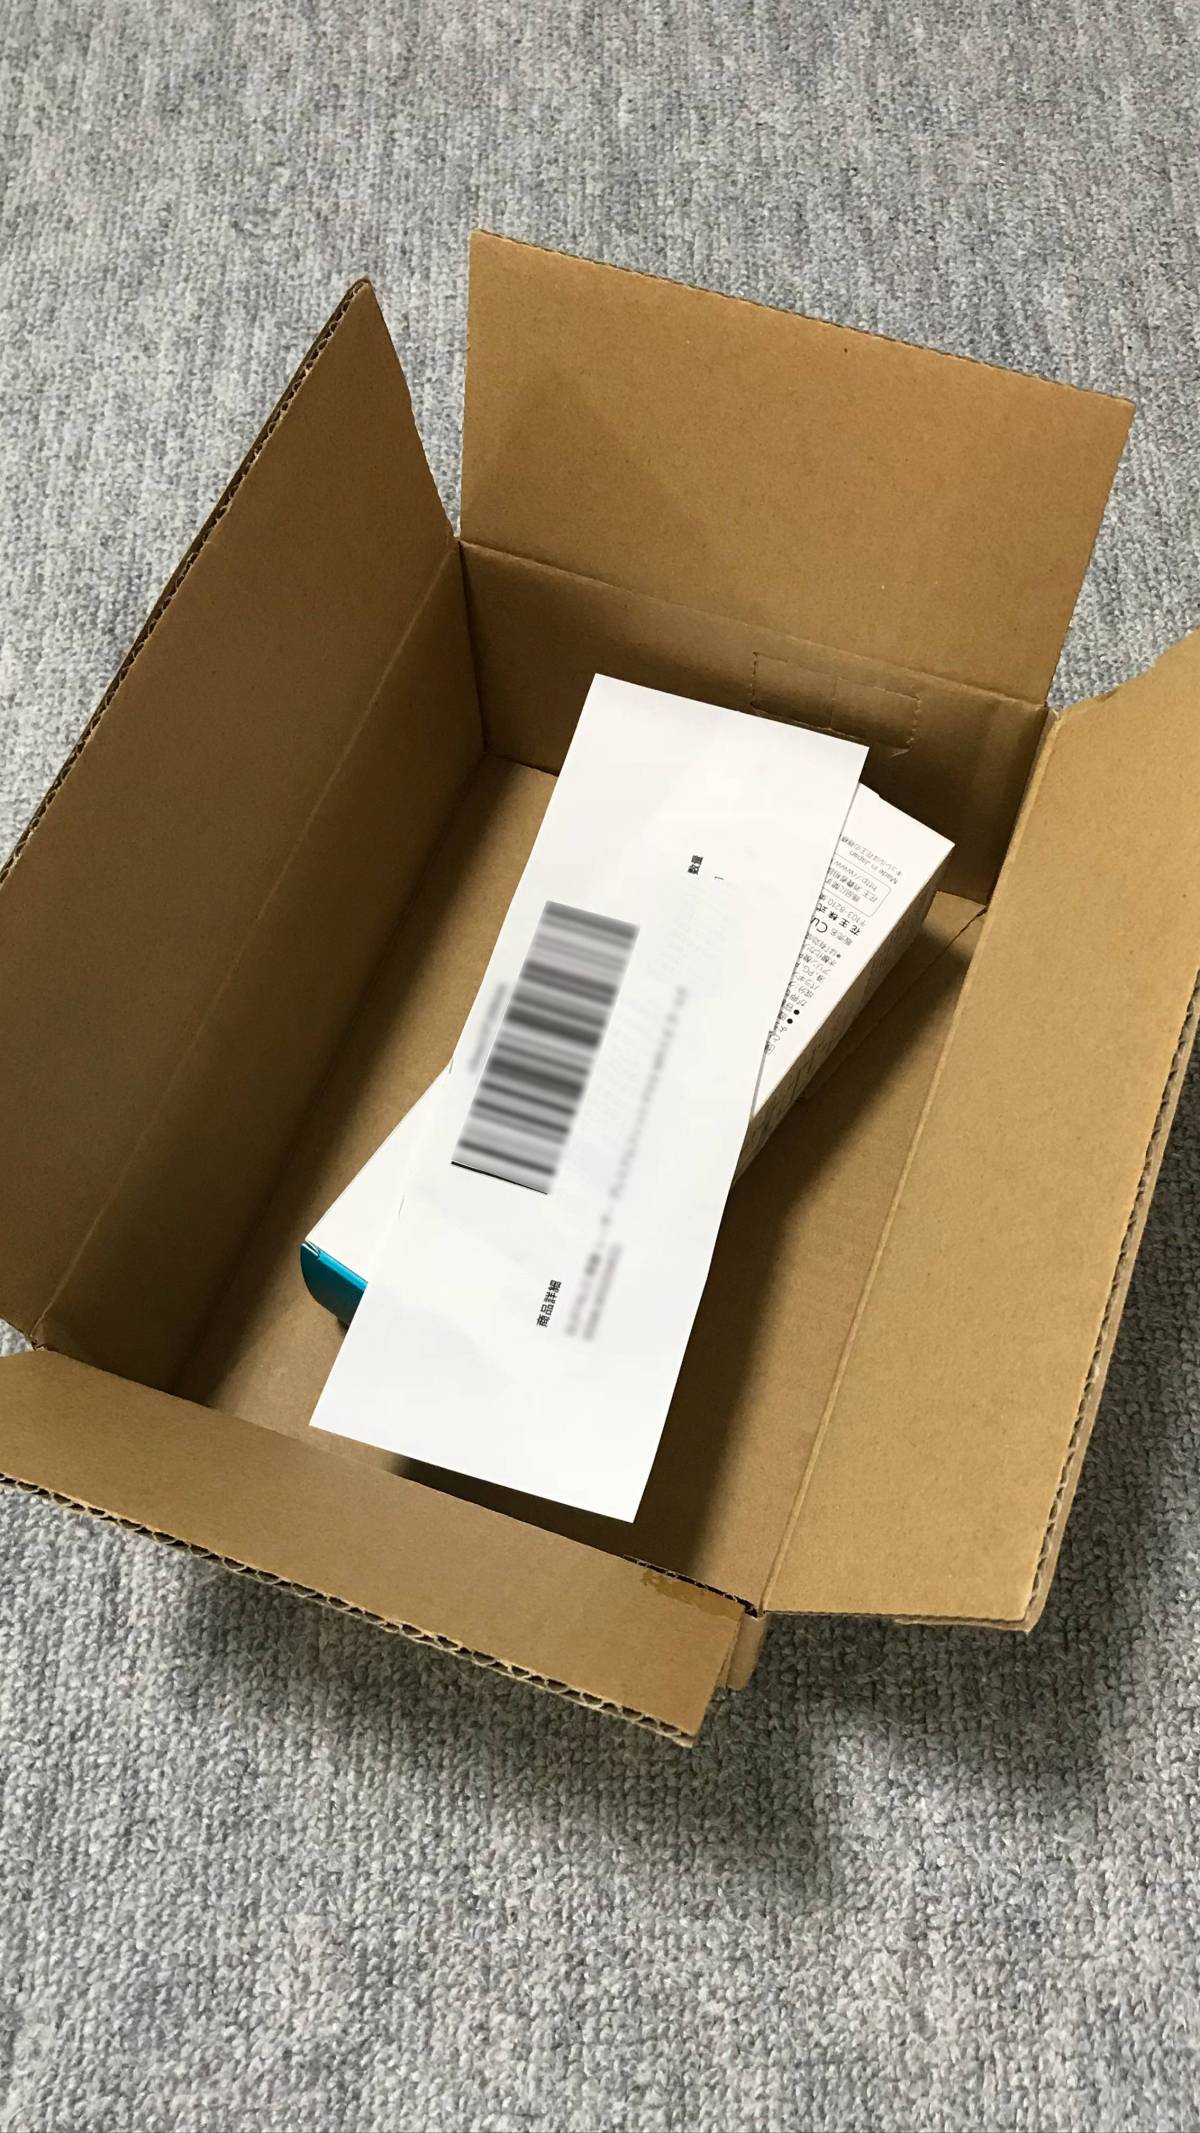 返品 済み amazon 開封 Amazonは開封済み商品を返品できる？全額返金できる条件や商品を紹介